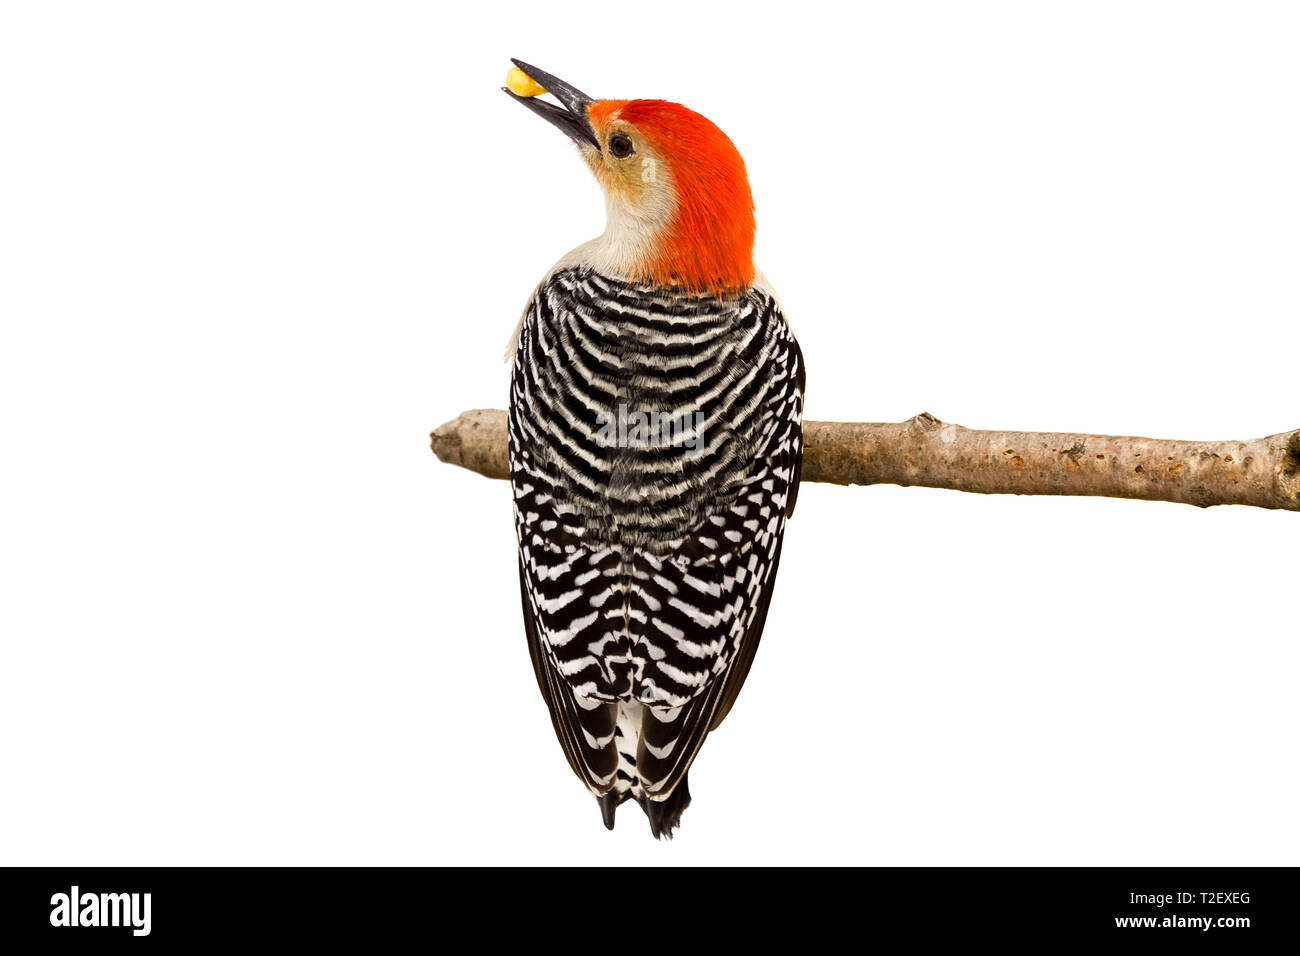 Red-bellied Woodpecker hält einen Kernel von Mais im Schnabel, vollständige Ansicht der gestreifte schwarze und weiße Federn und ein Profil Ihrer roten Kopf Holding ein p Stockfoto